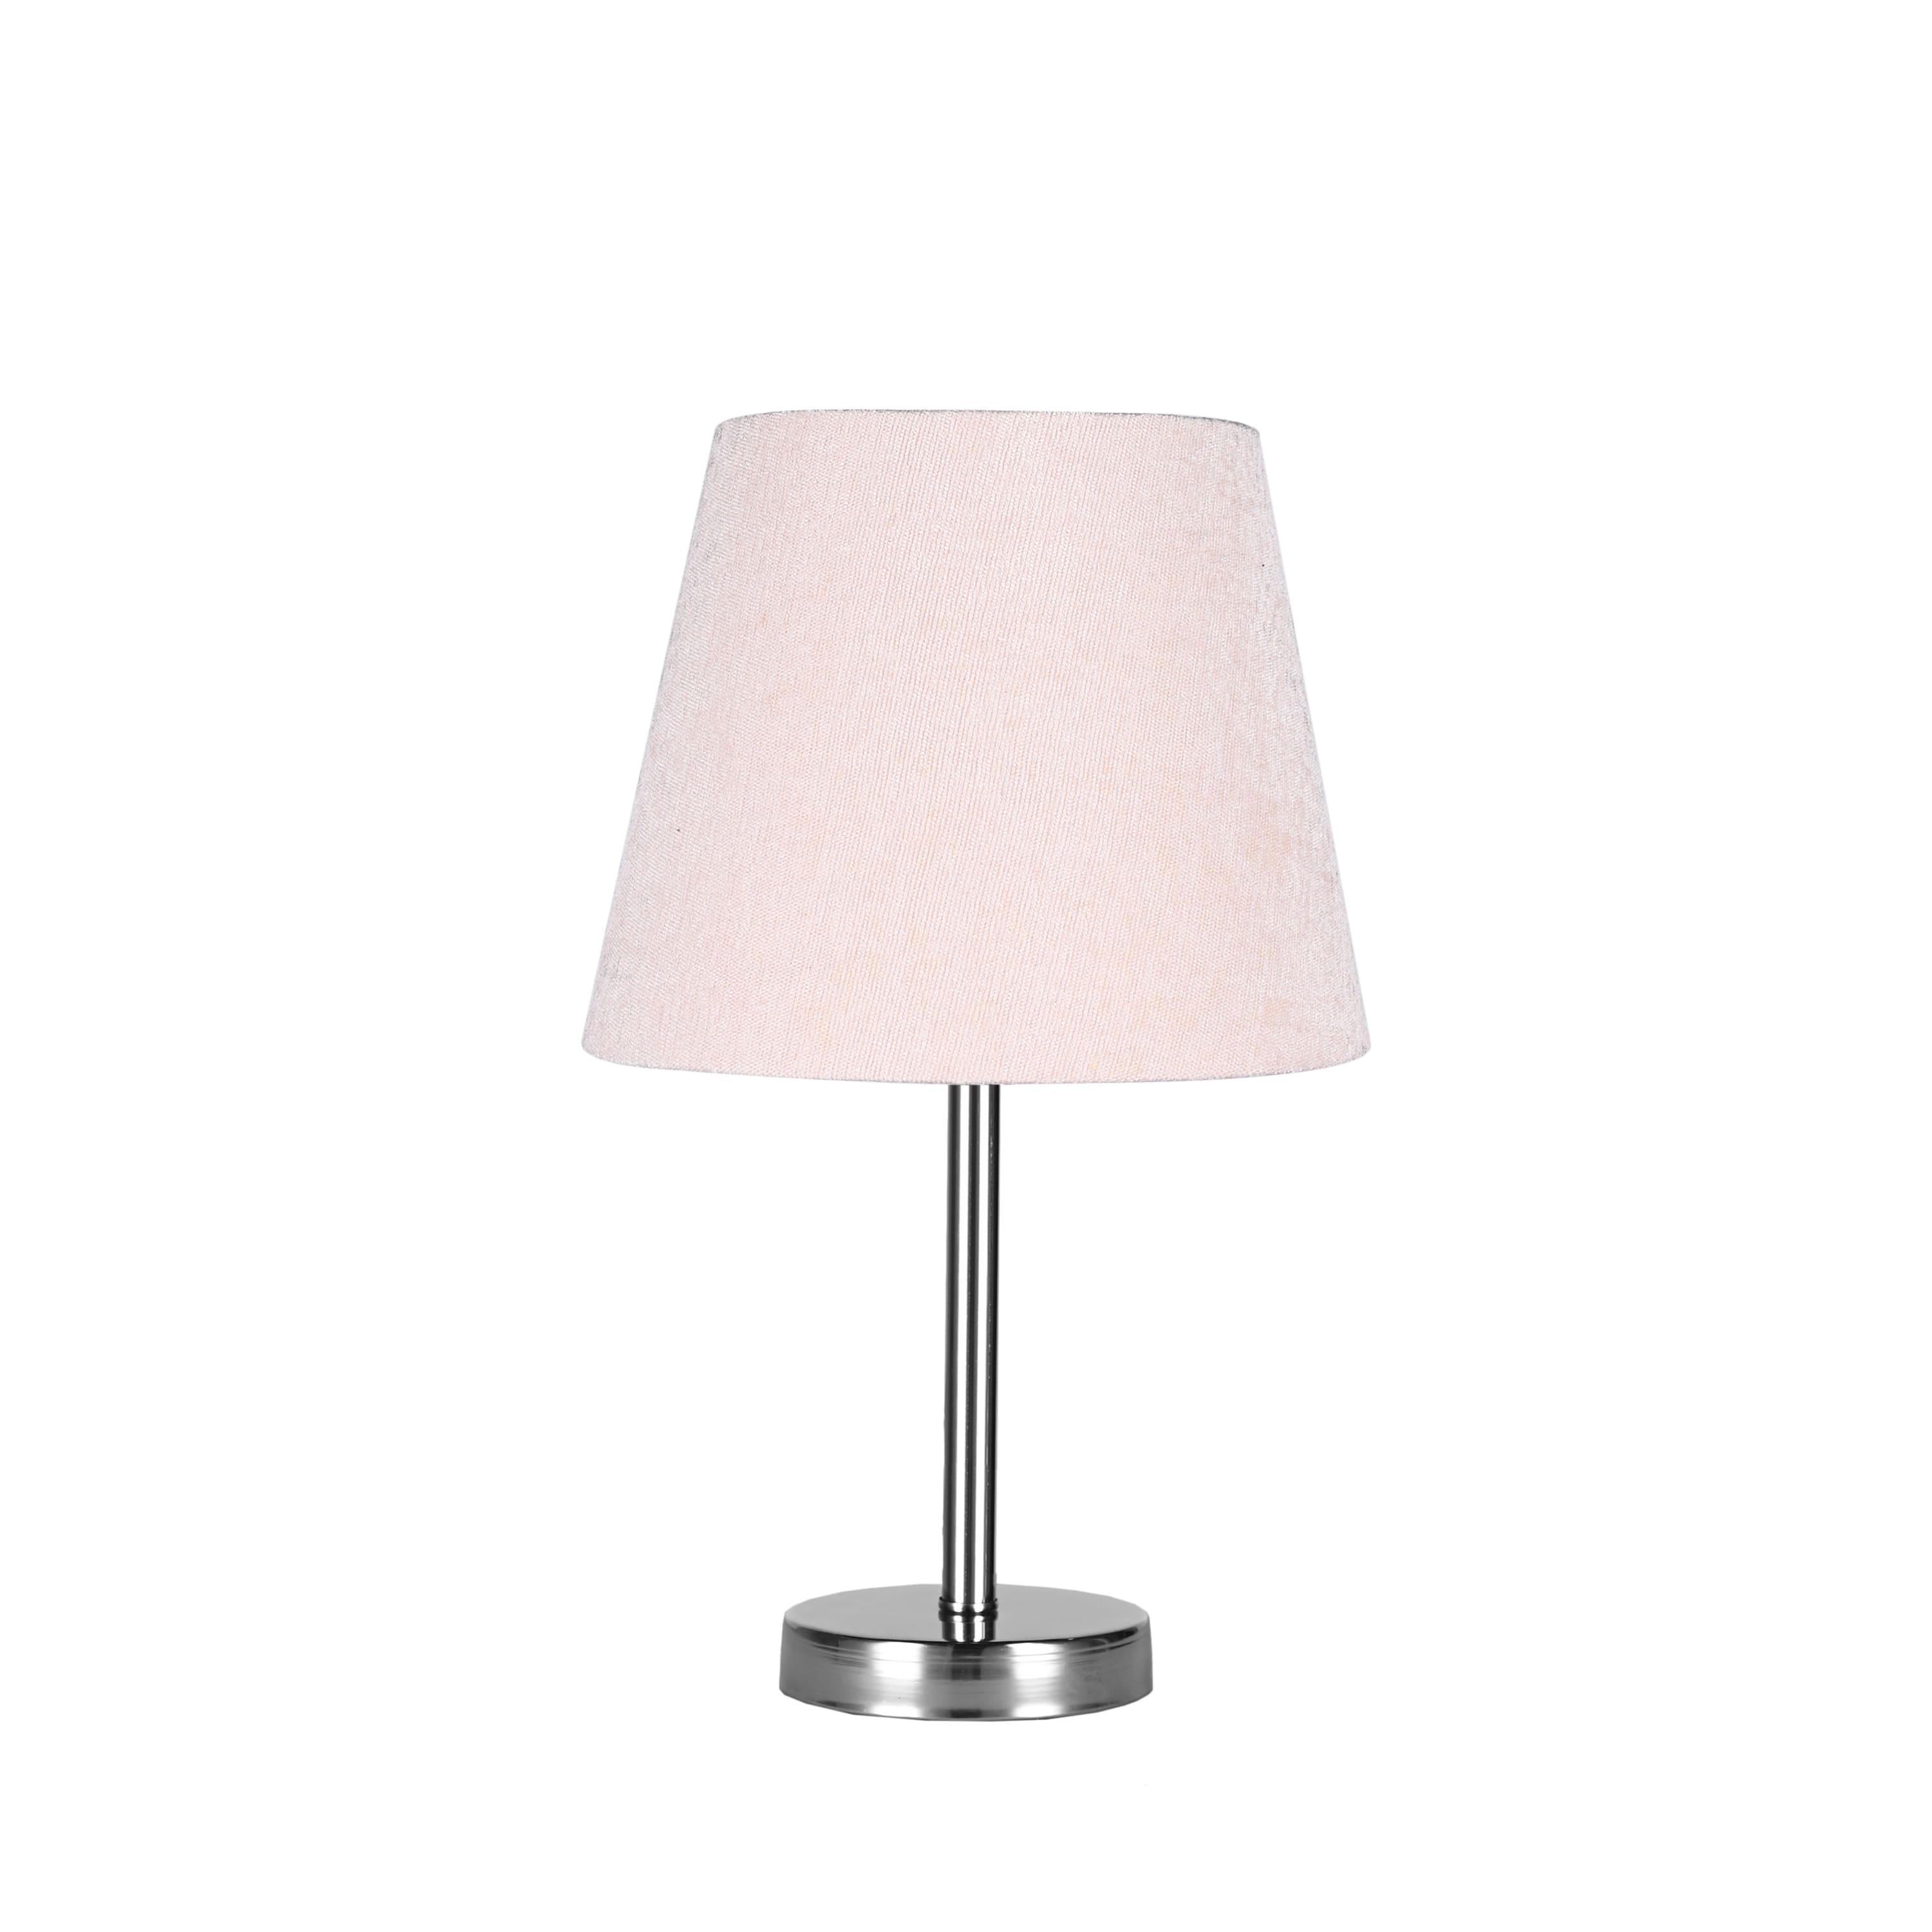 El Rawda Beige Modern Desk Lamp 41×41 cm - 1 Lamp - RL-TL-B-008